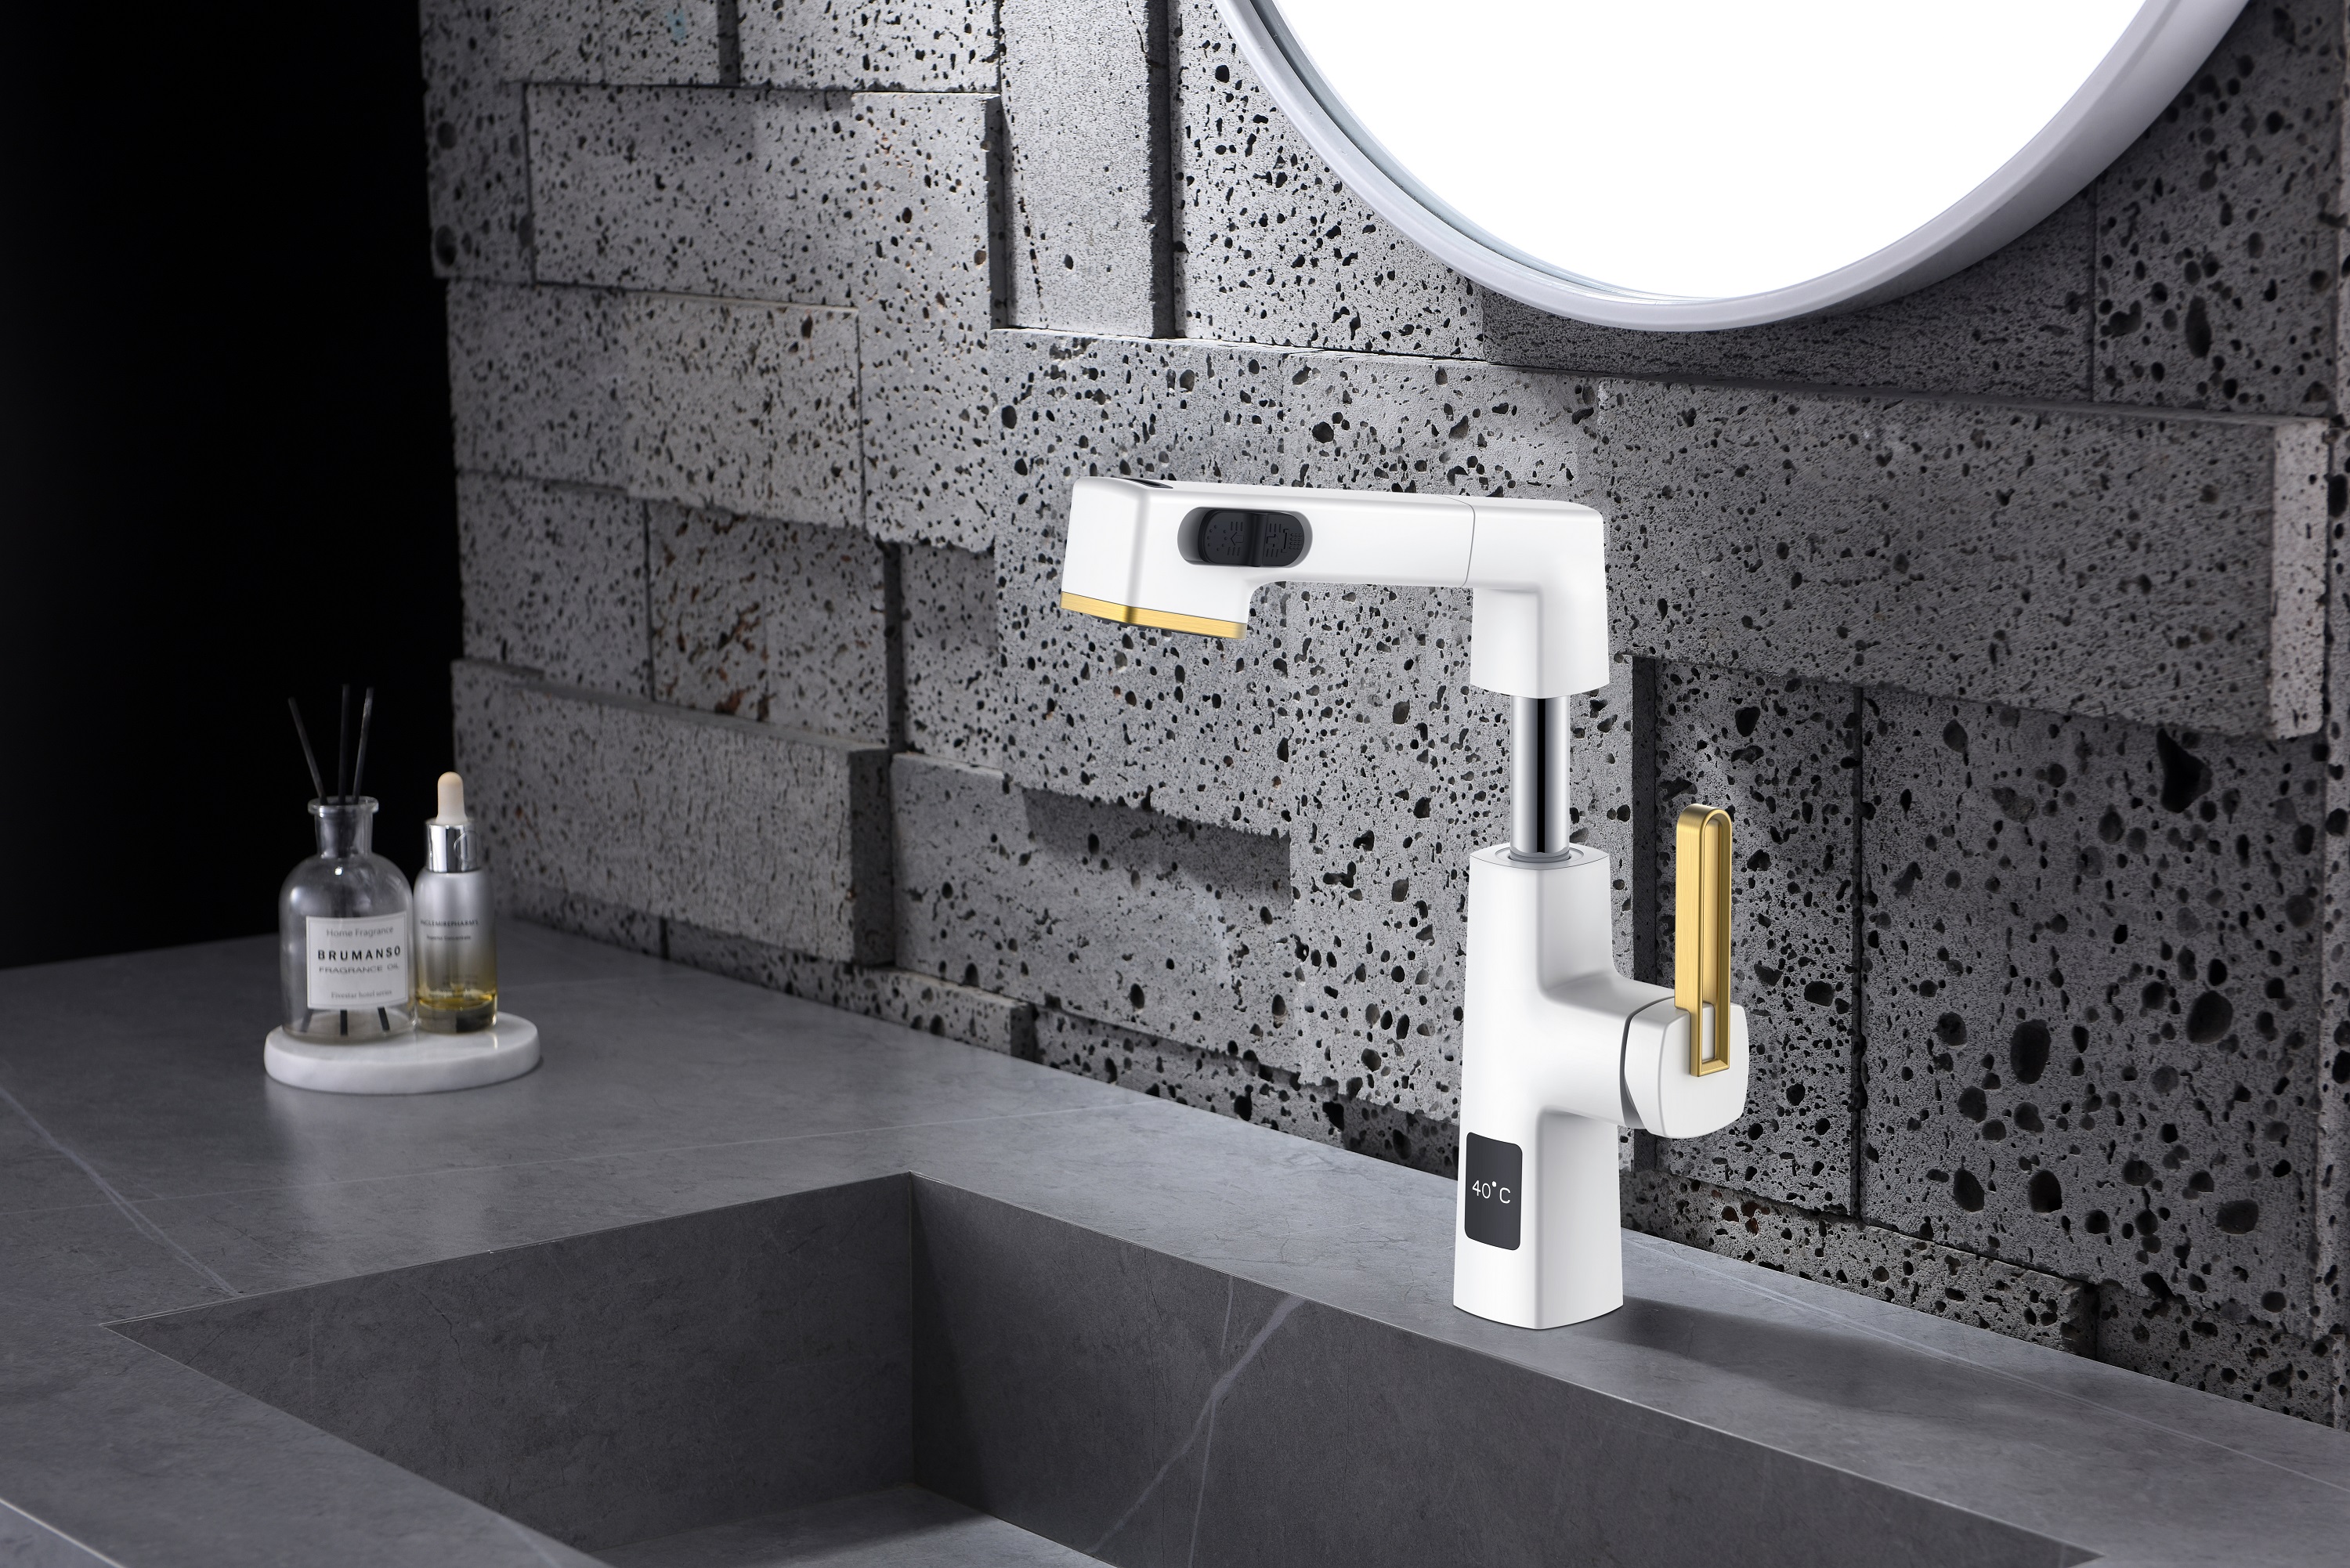  Уникальный дизайн дисплея температуры Белый и золотой выдвижной смеситель для ванной комнаты Регулируемая высота